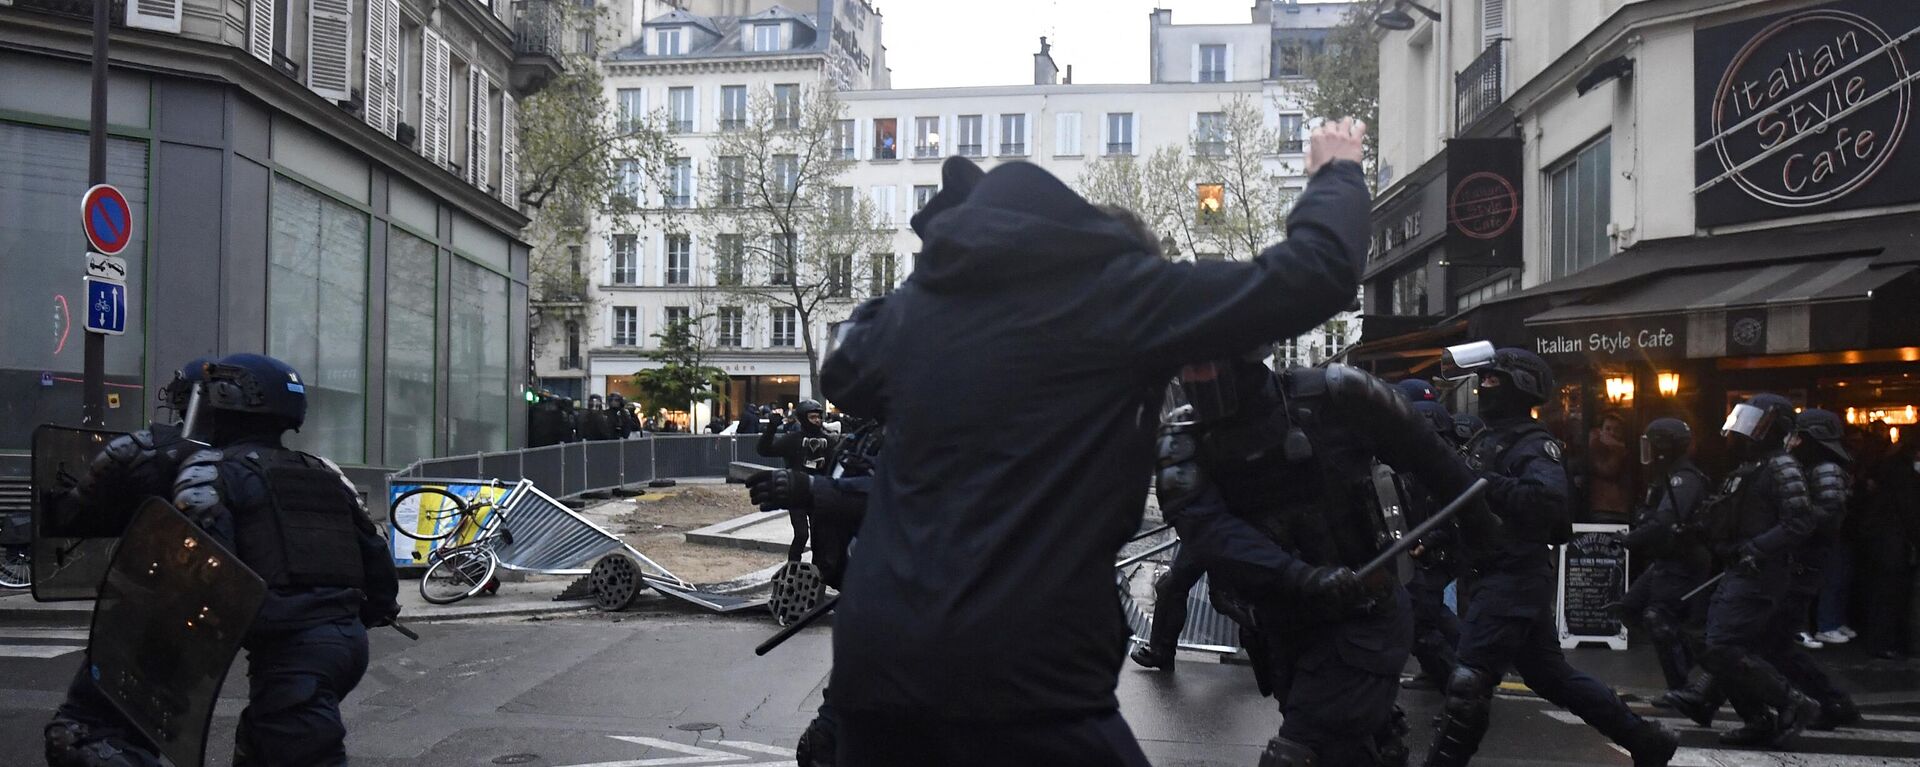 Manifestantes en contra de la reforma de pensiones en Francia se enfrentan con la Policía - Sputnik Mundo, 1920, 14.04.2023